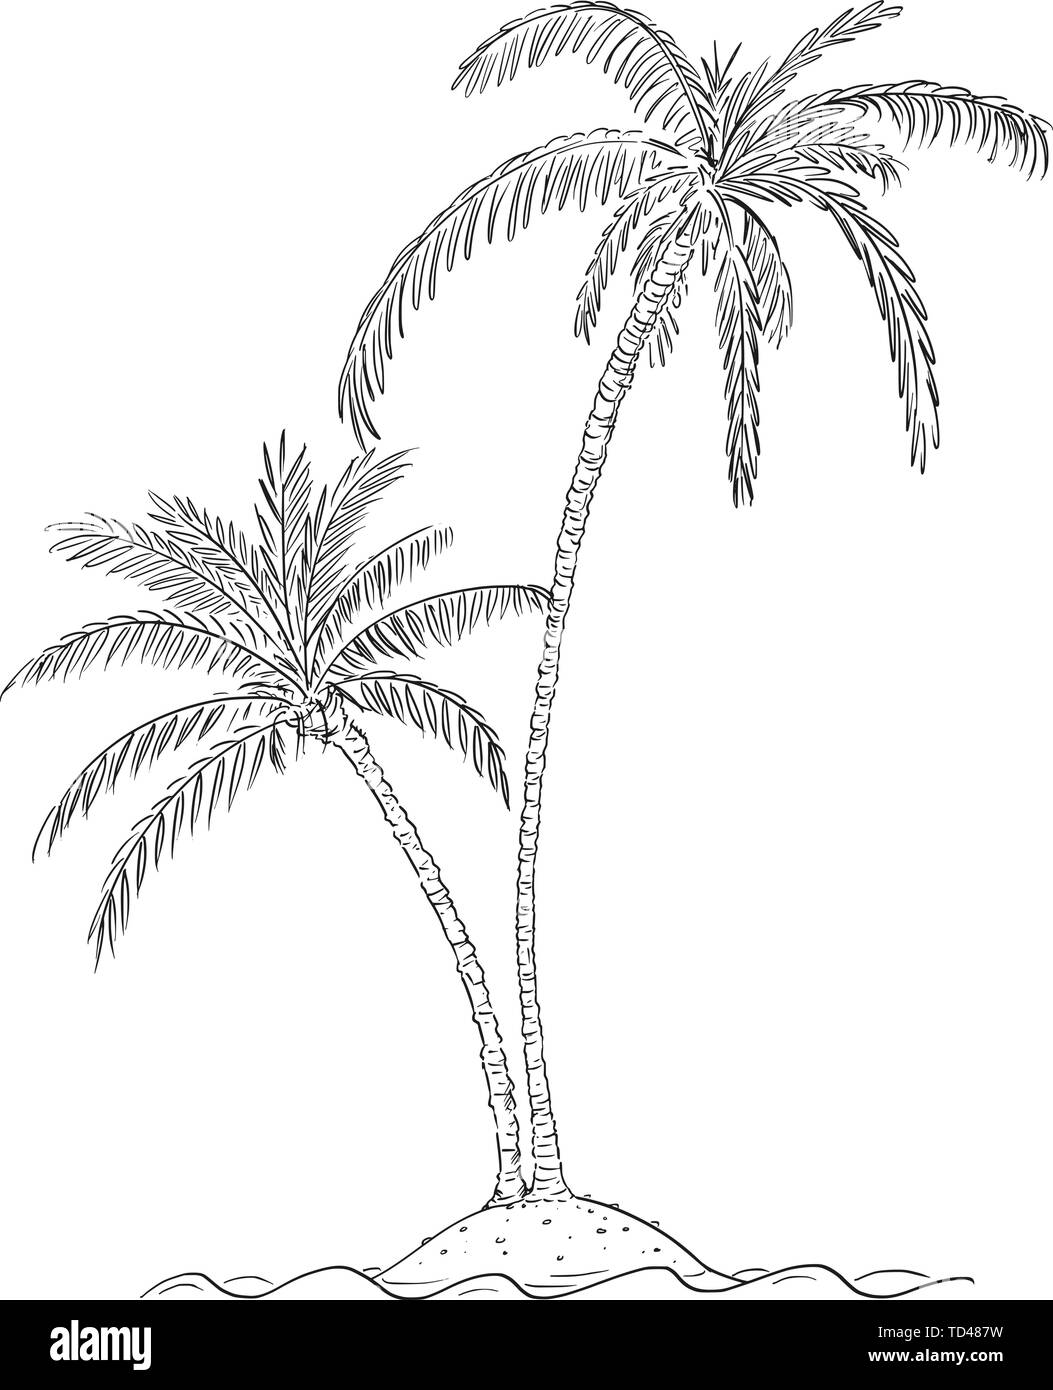 Vector cartoon illustration ou dessin de deux palmiers poussent sur les petits États insulaires dans le centre de l'océan. Illustration de Vecteur